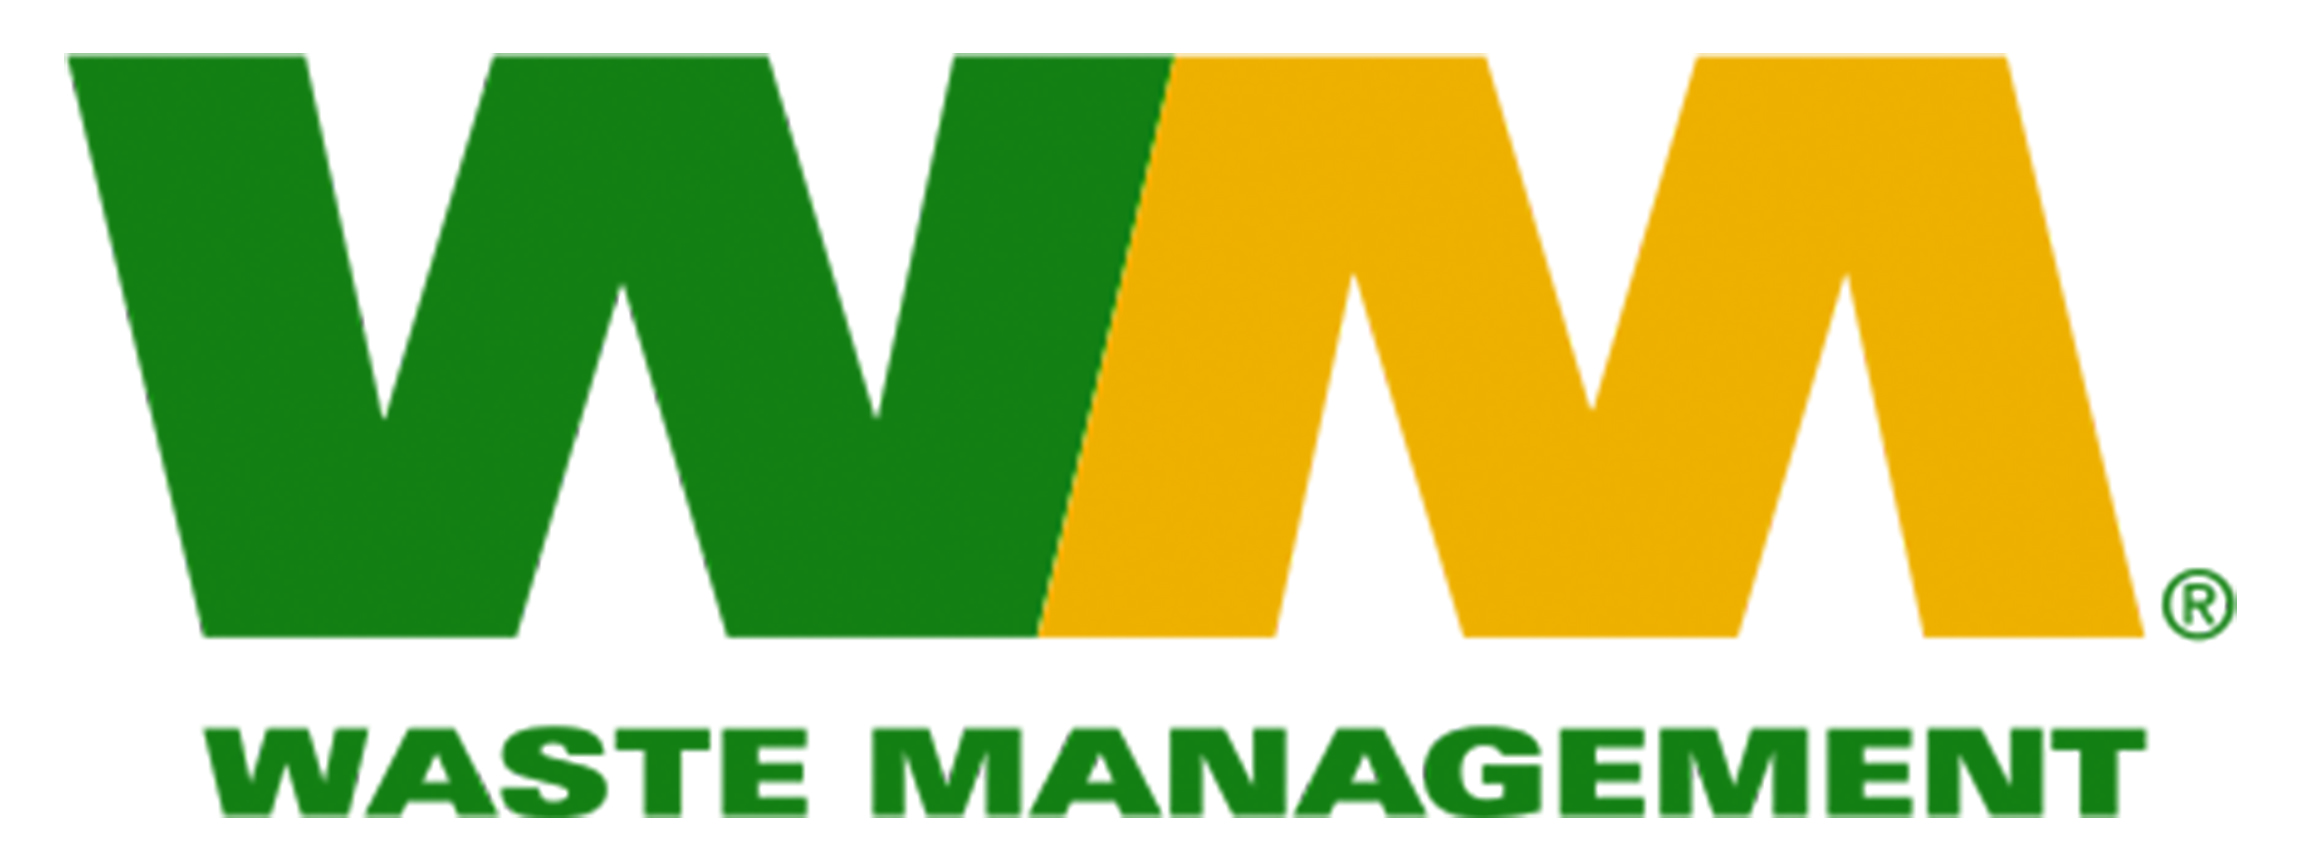 waste_management